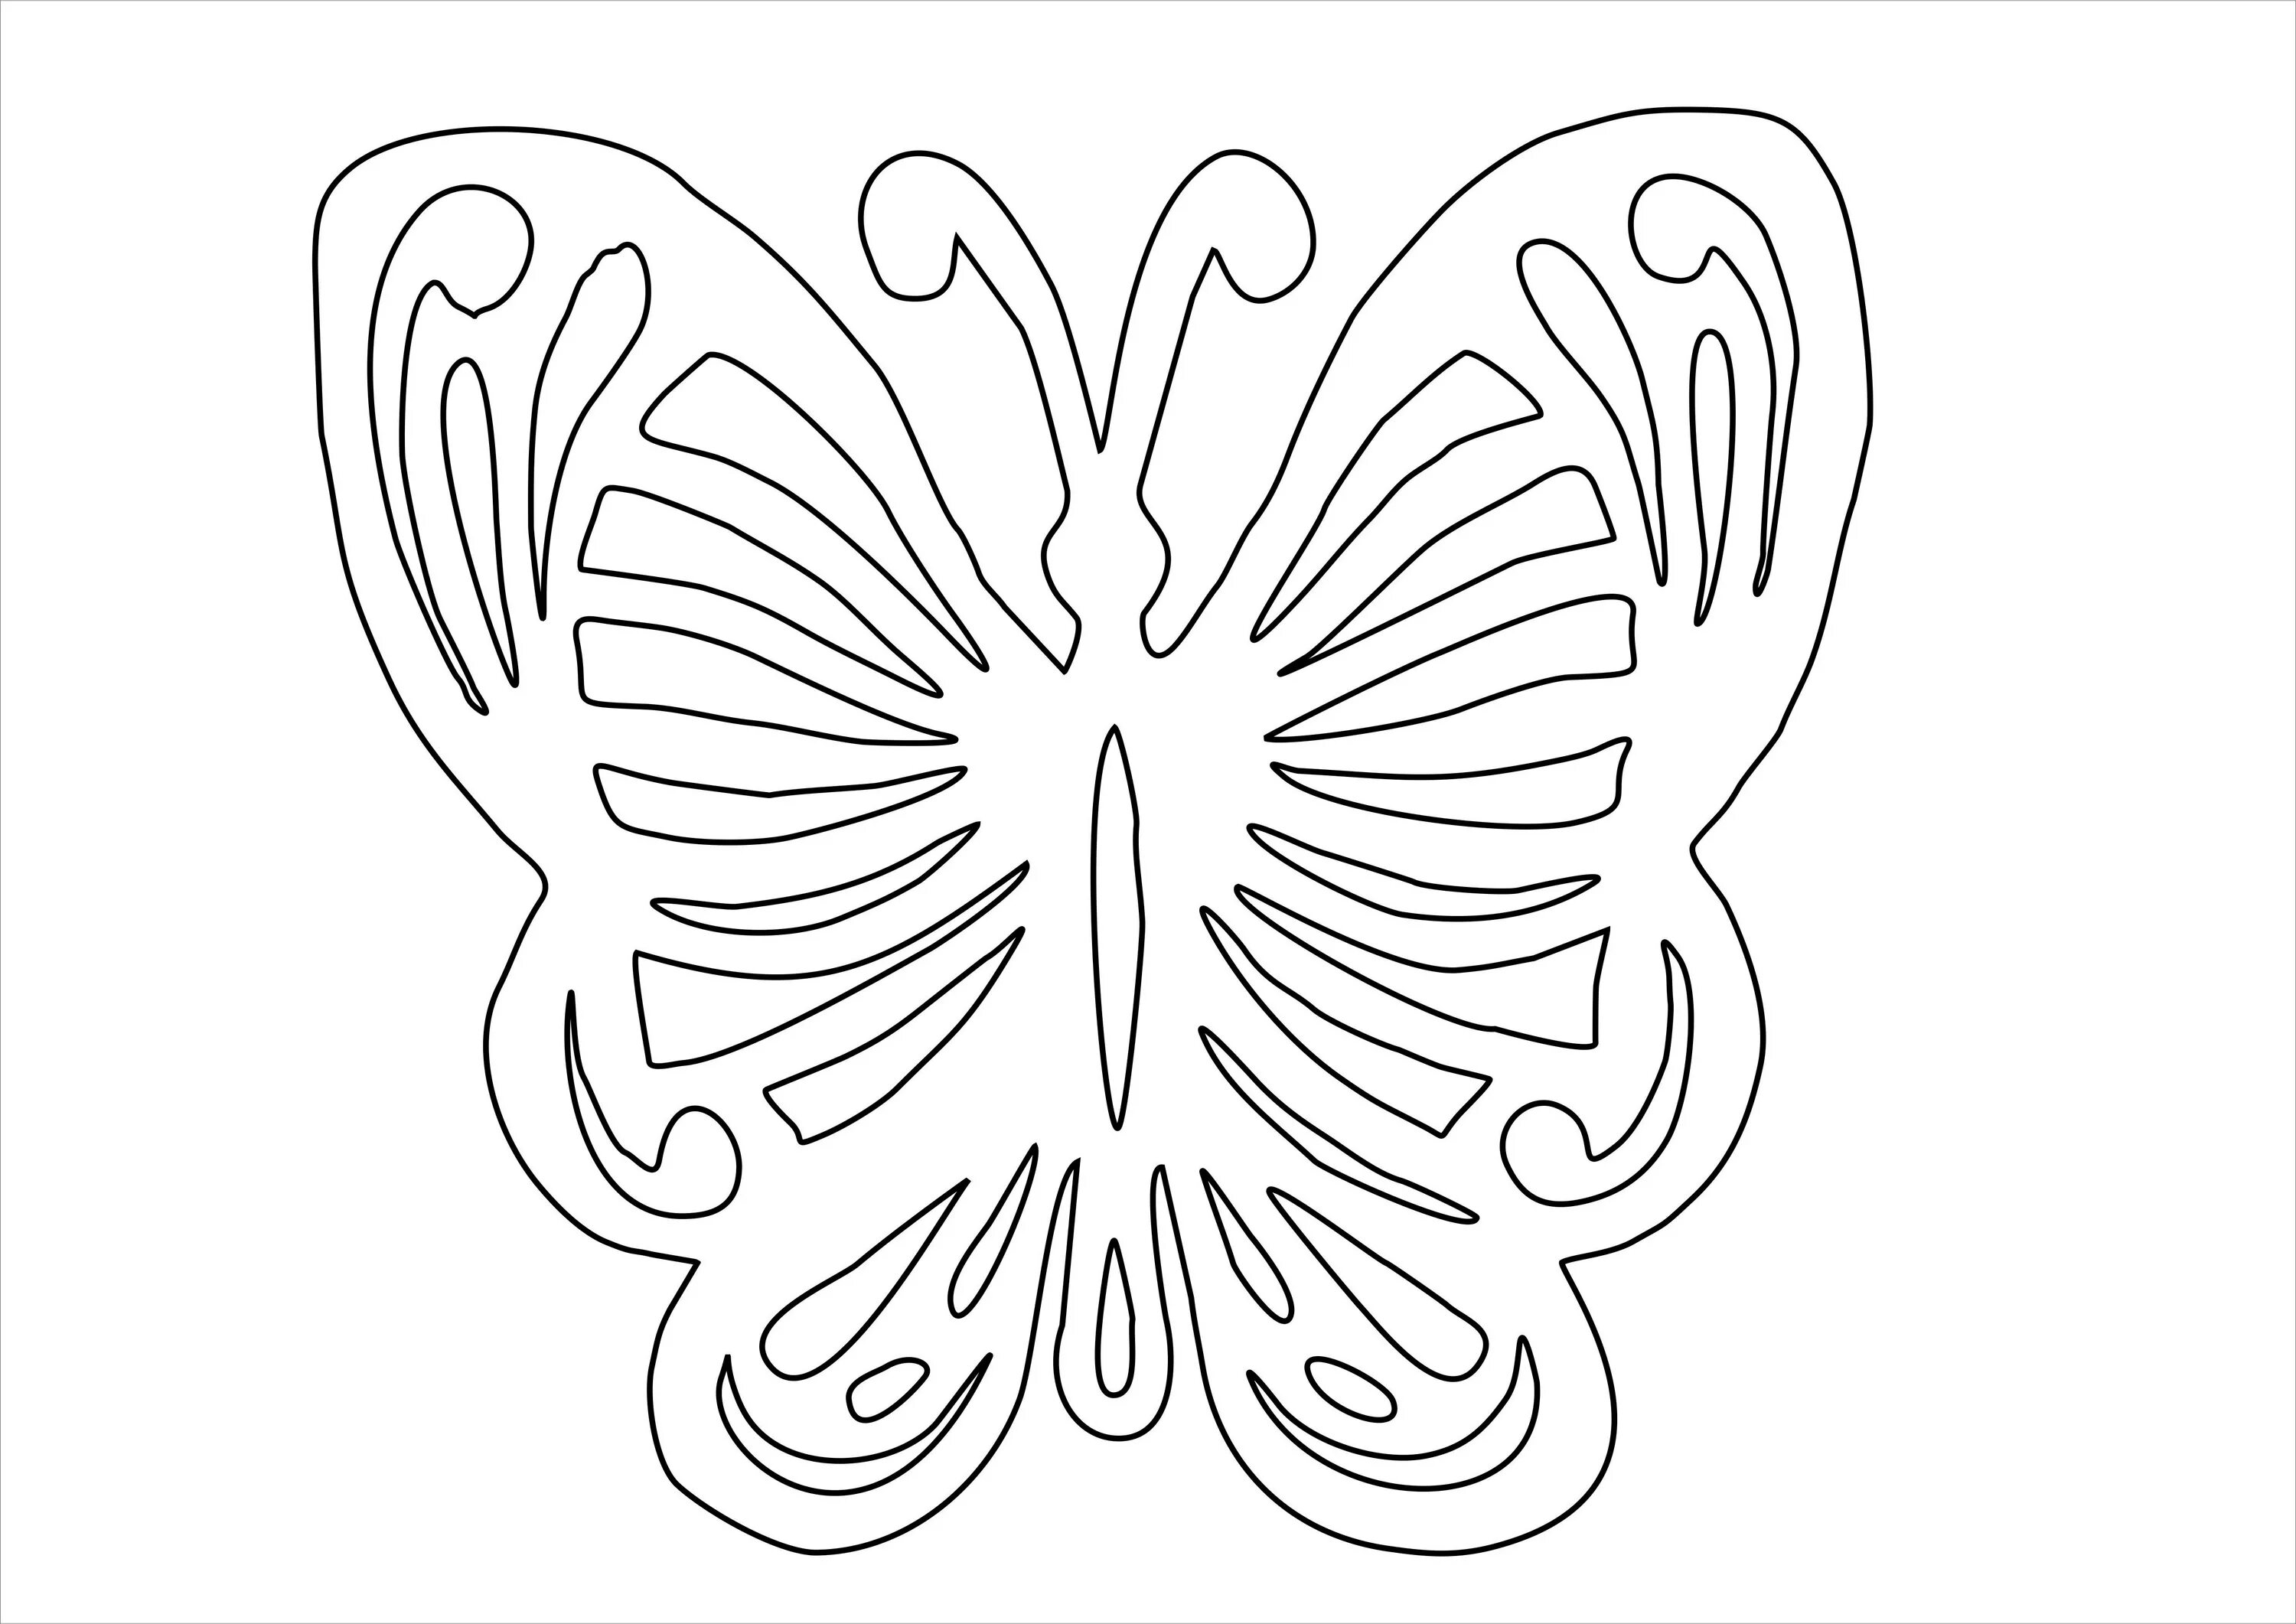 Вытыканки бабочки. Трафарет бабочки для вырезания. Бабочка шаблон для вырезания. Бабочка рисунок трафарет для вырезания. Бабочки шавблоныдлявырезания.